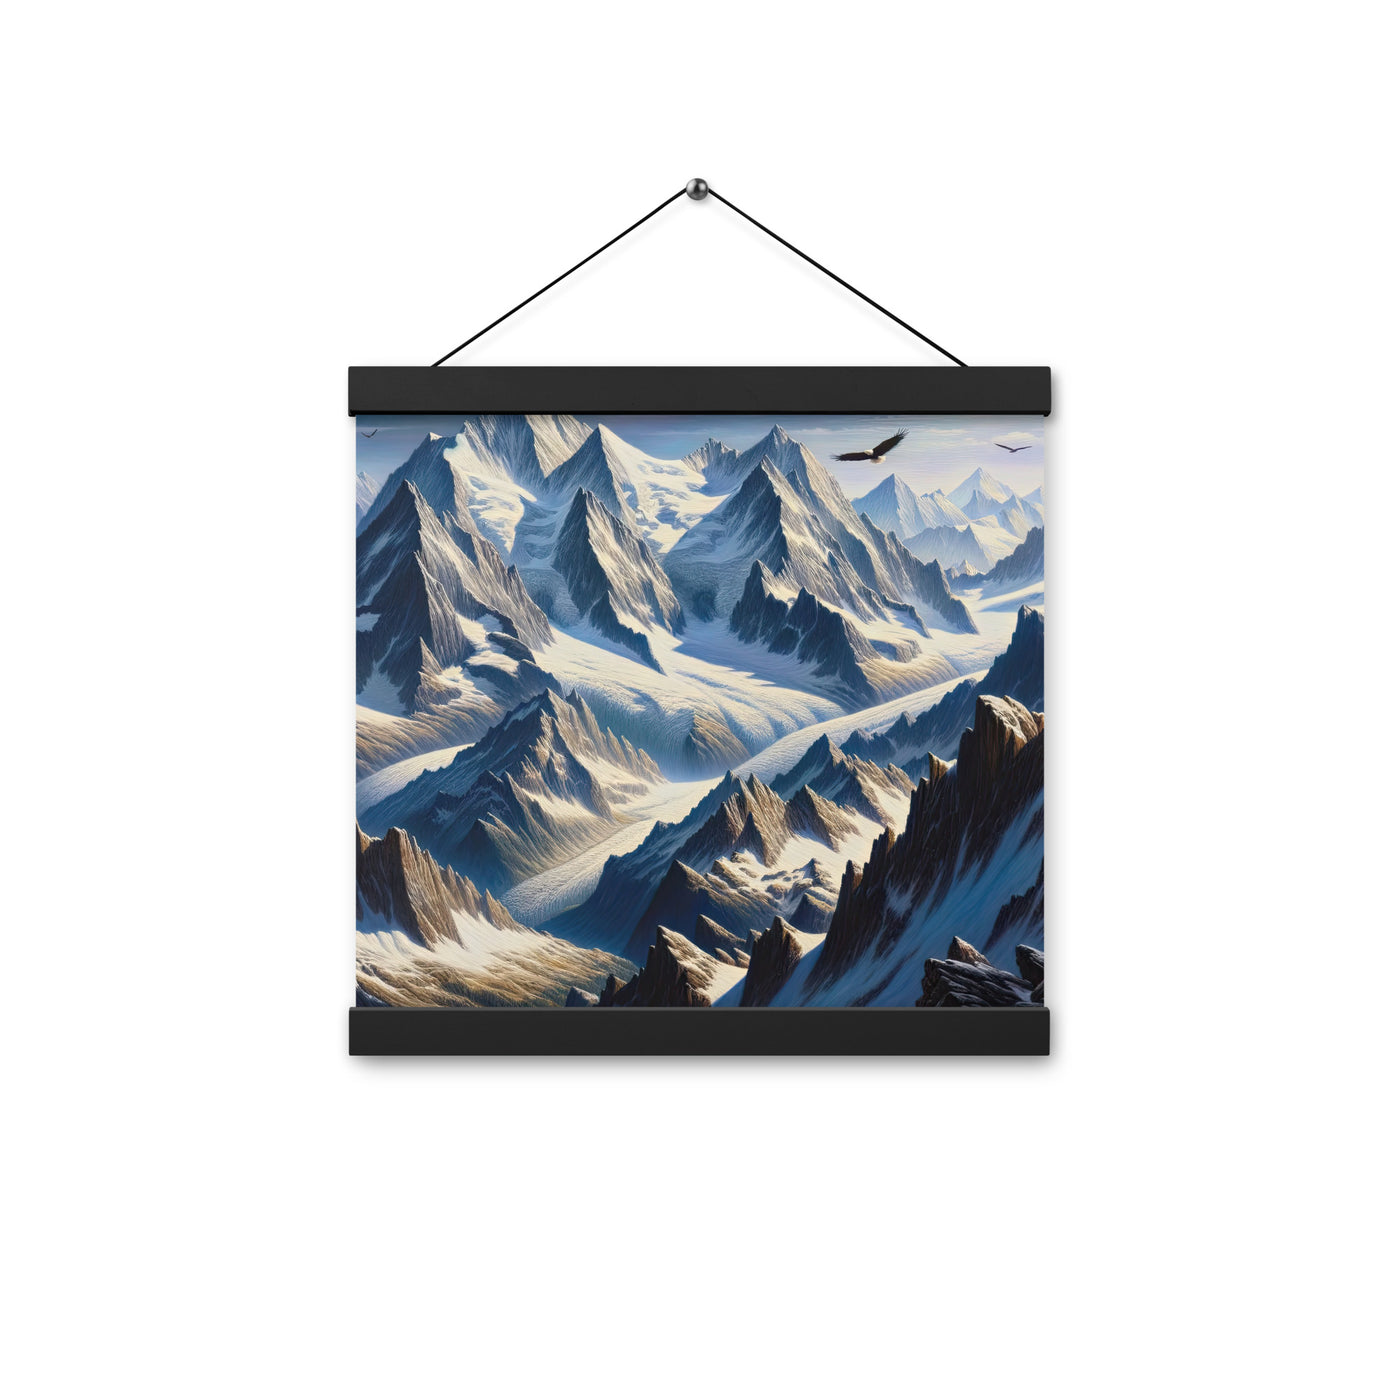 Ölgemälde der Alpen mit hervorgehobenen zerklüfteten Geländen im Licht und Schatten - Premium Poster mit Aufhängung berge xxx yyy zzz 30.5 x 30.5 cm